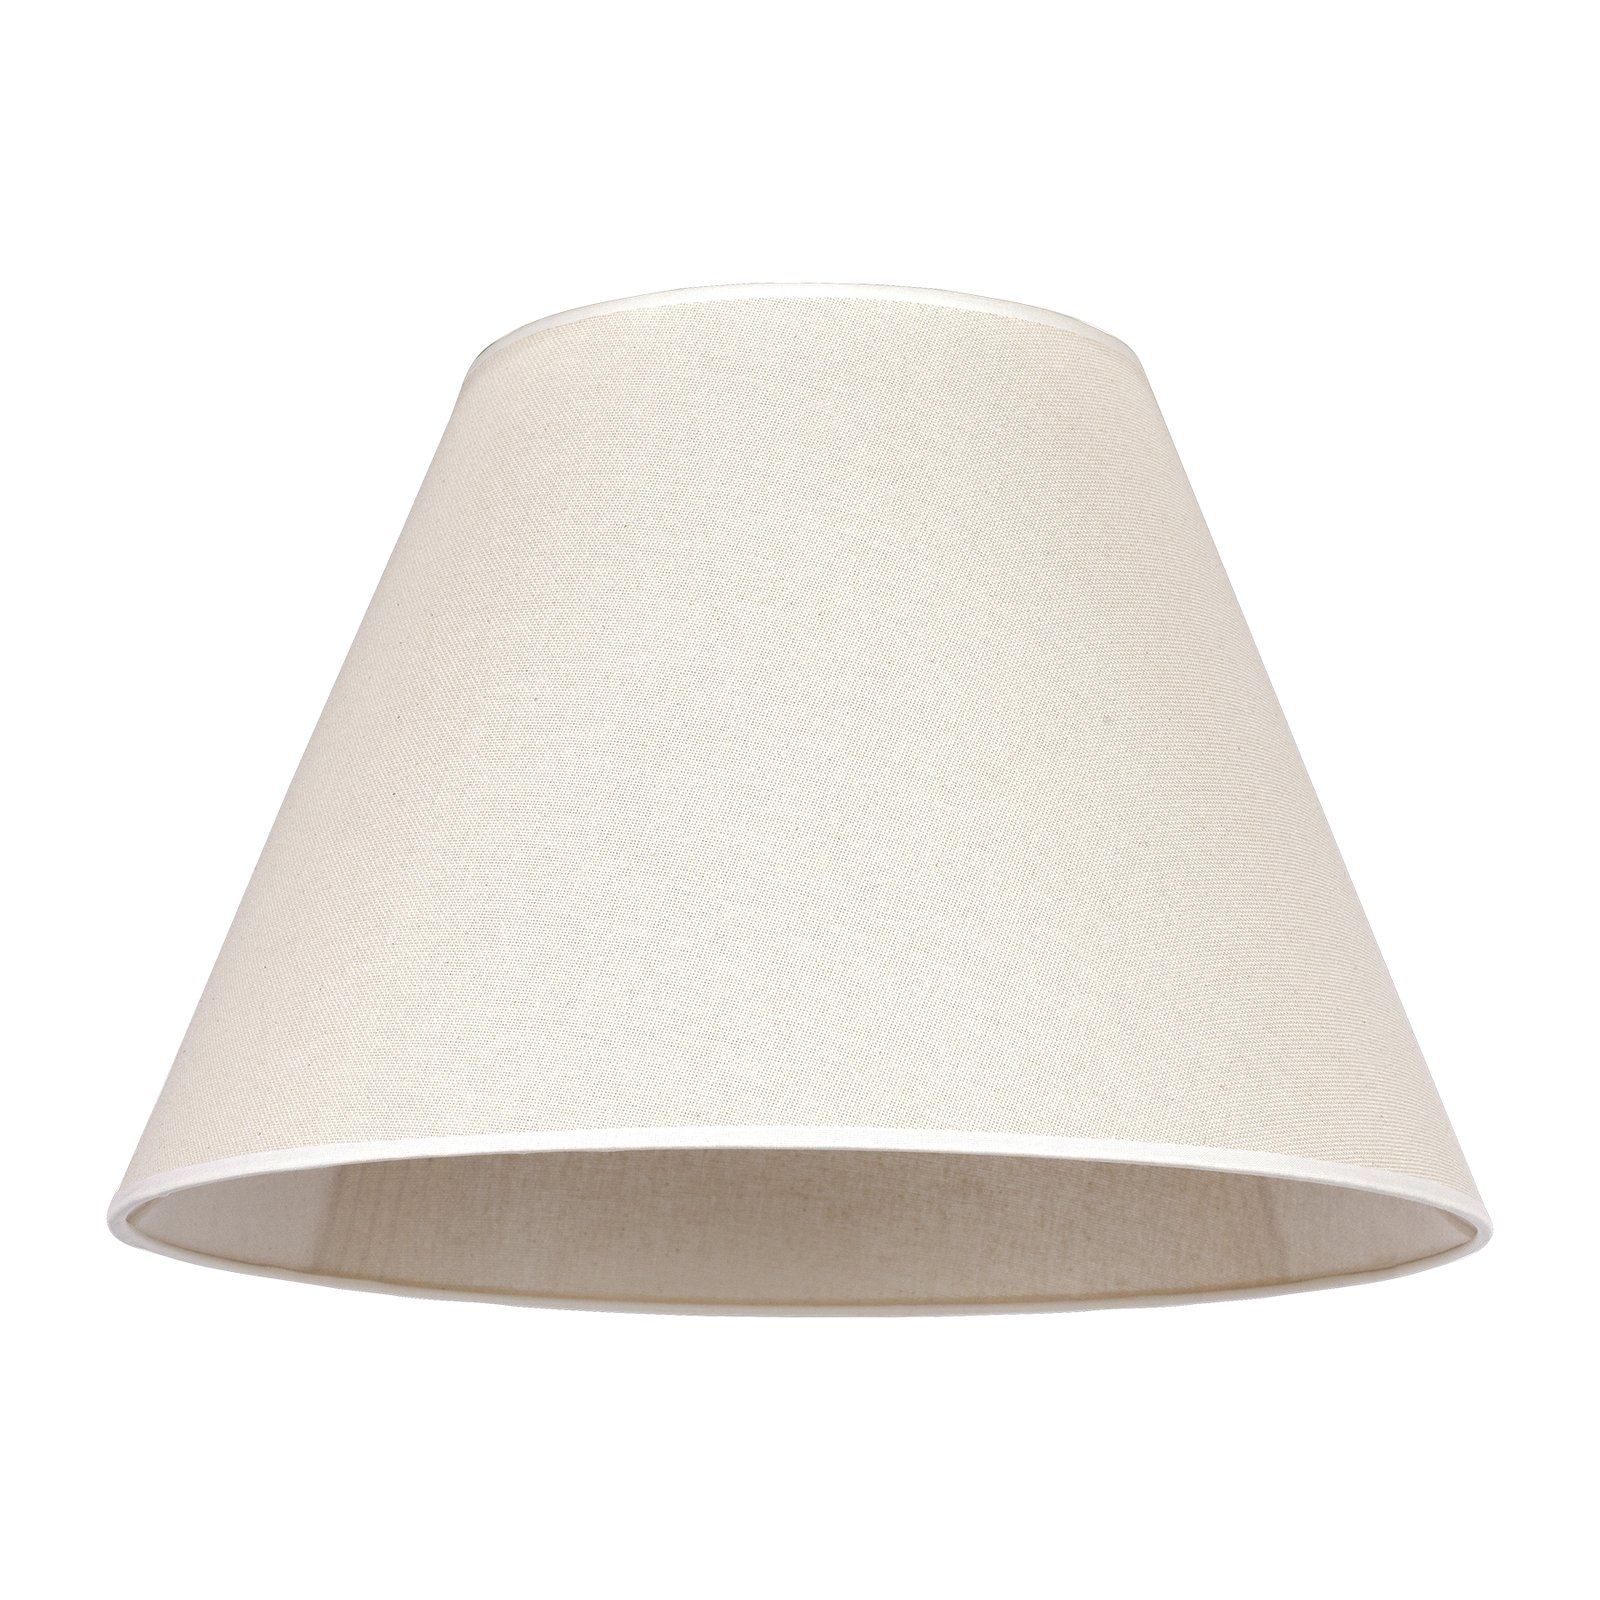 Pseudosofia lampshade for floor lamp beige